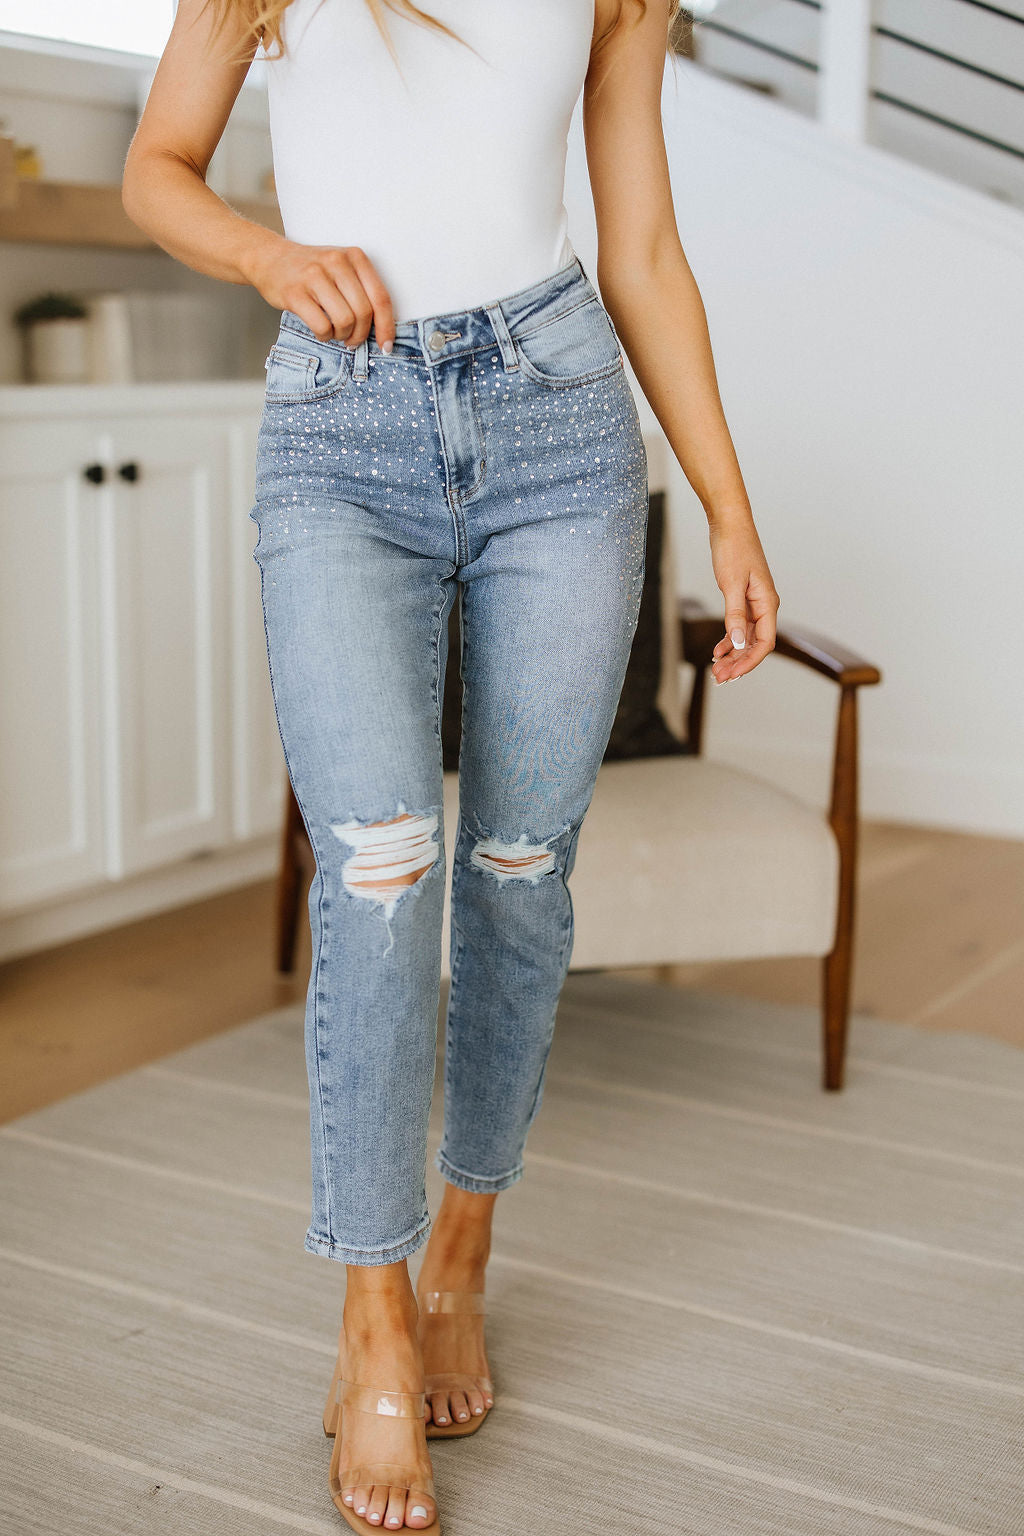 Judy Blue Rhinestone Beauty Slim Fit Jeans JB Boutique Simplified